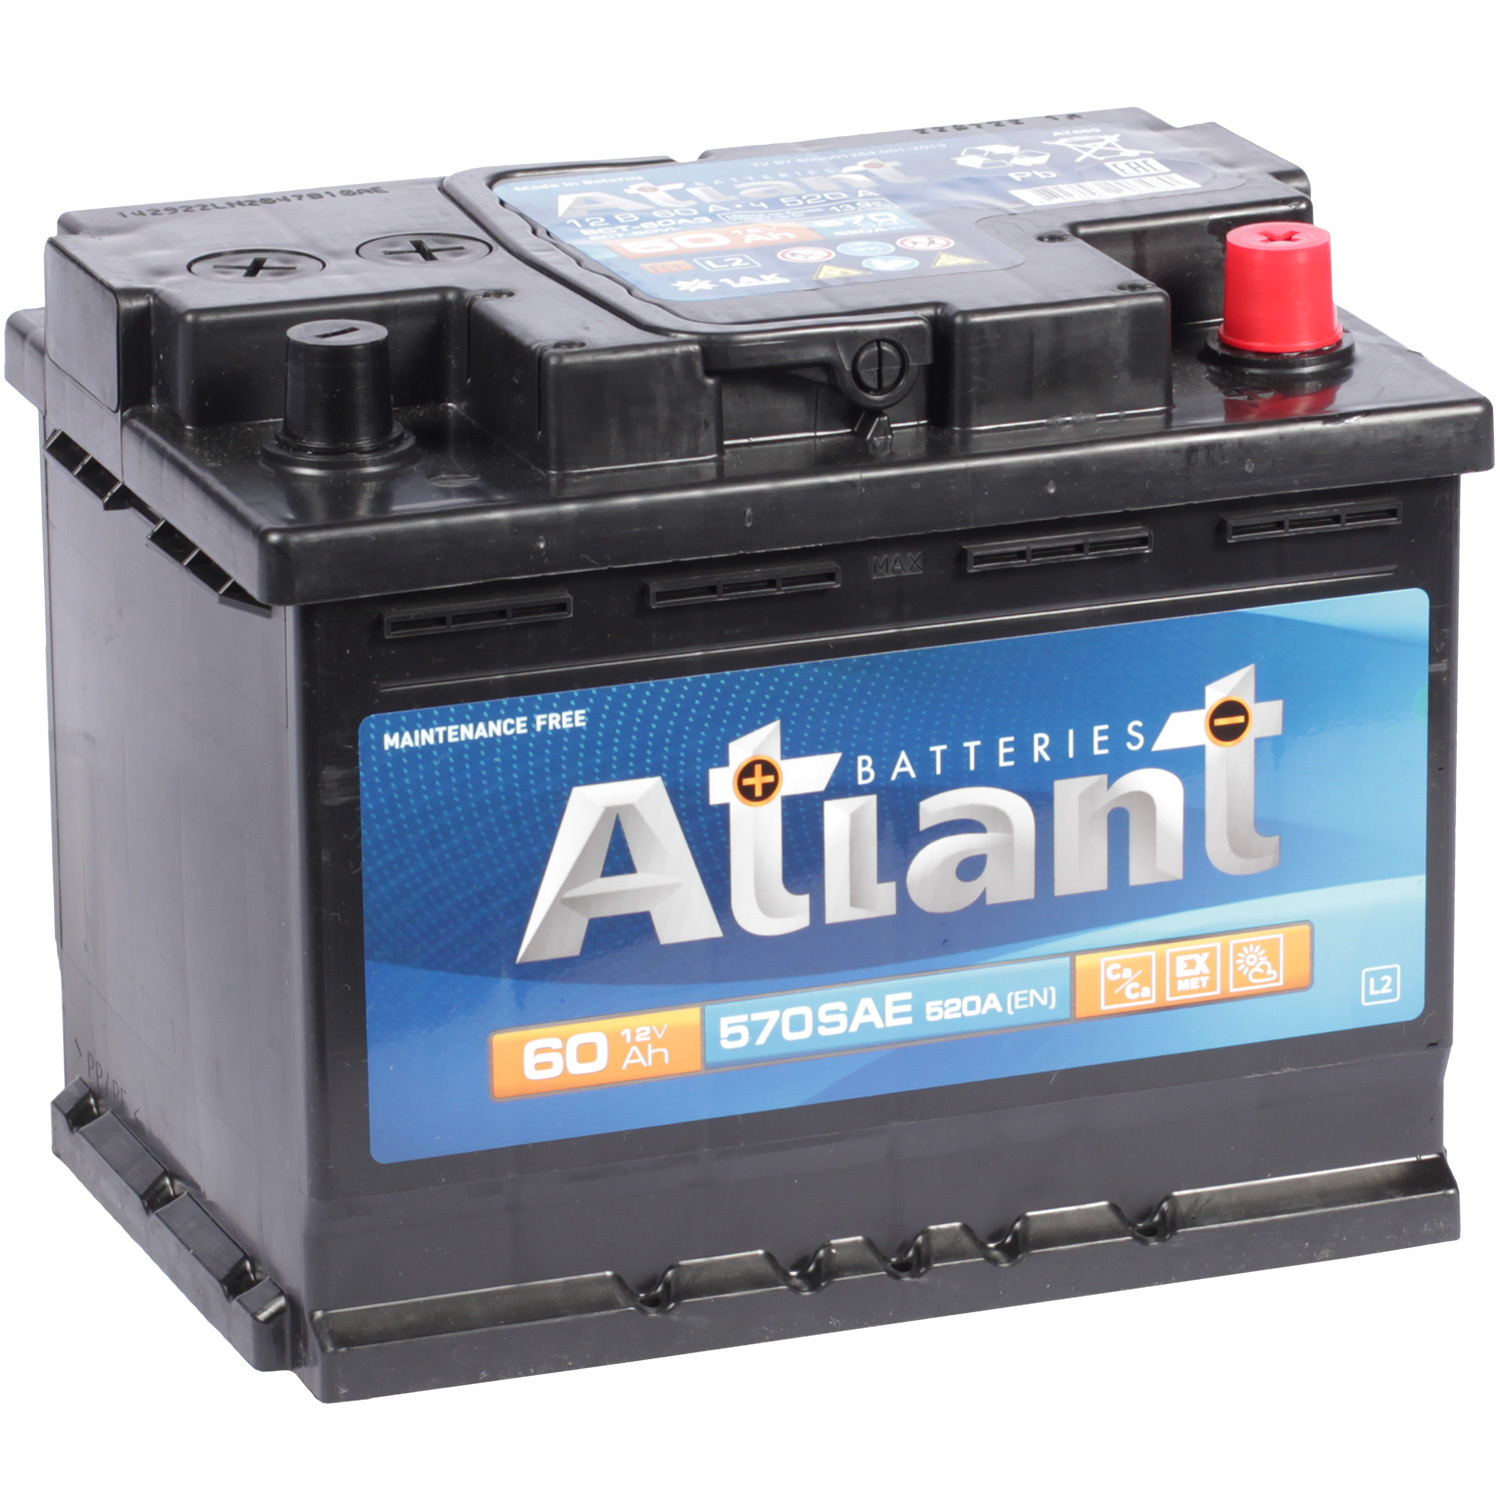 Atlant Автомобильный аккумулятор Atlant 60 Ач обратная полярность L2 автофан автомобильный аккумулятор автофан 60 ач обратная полярность l2